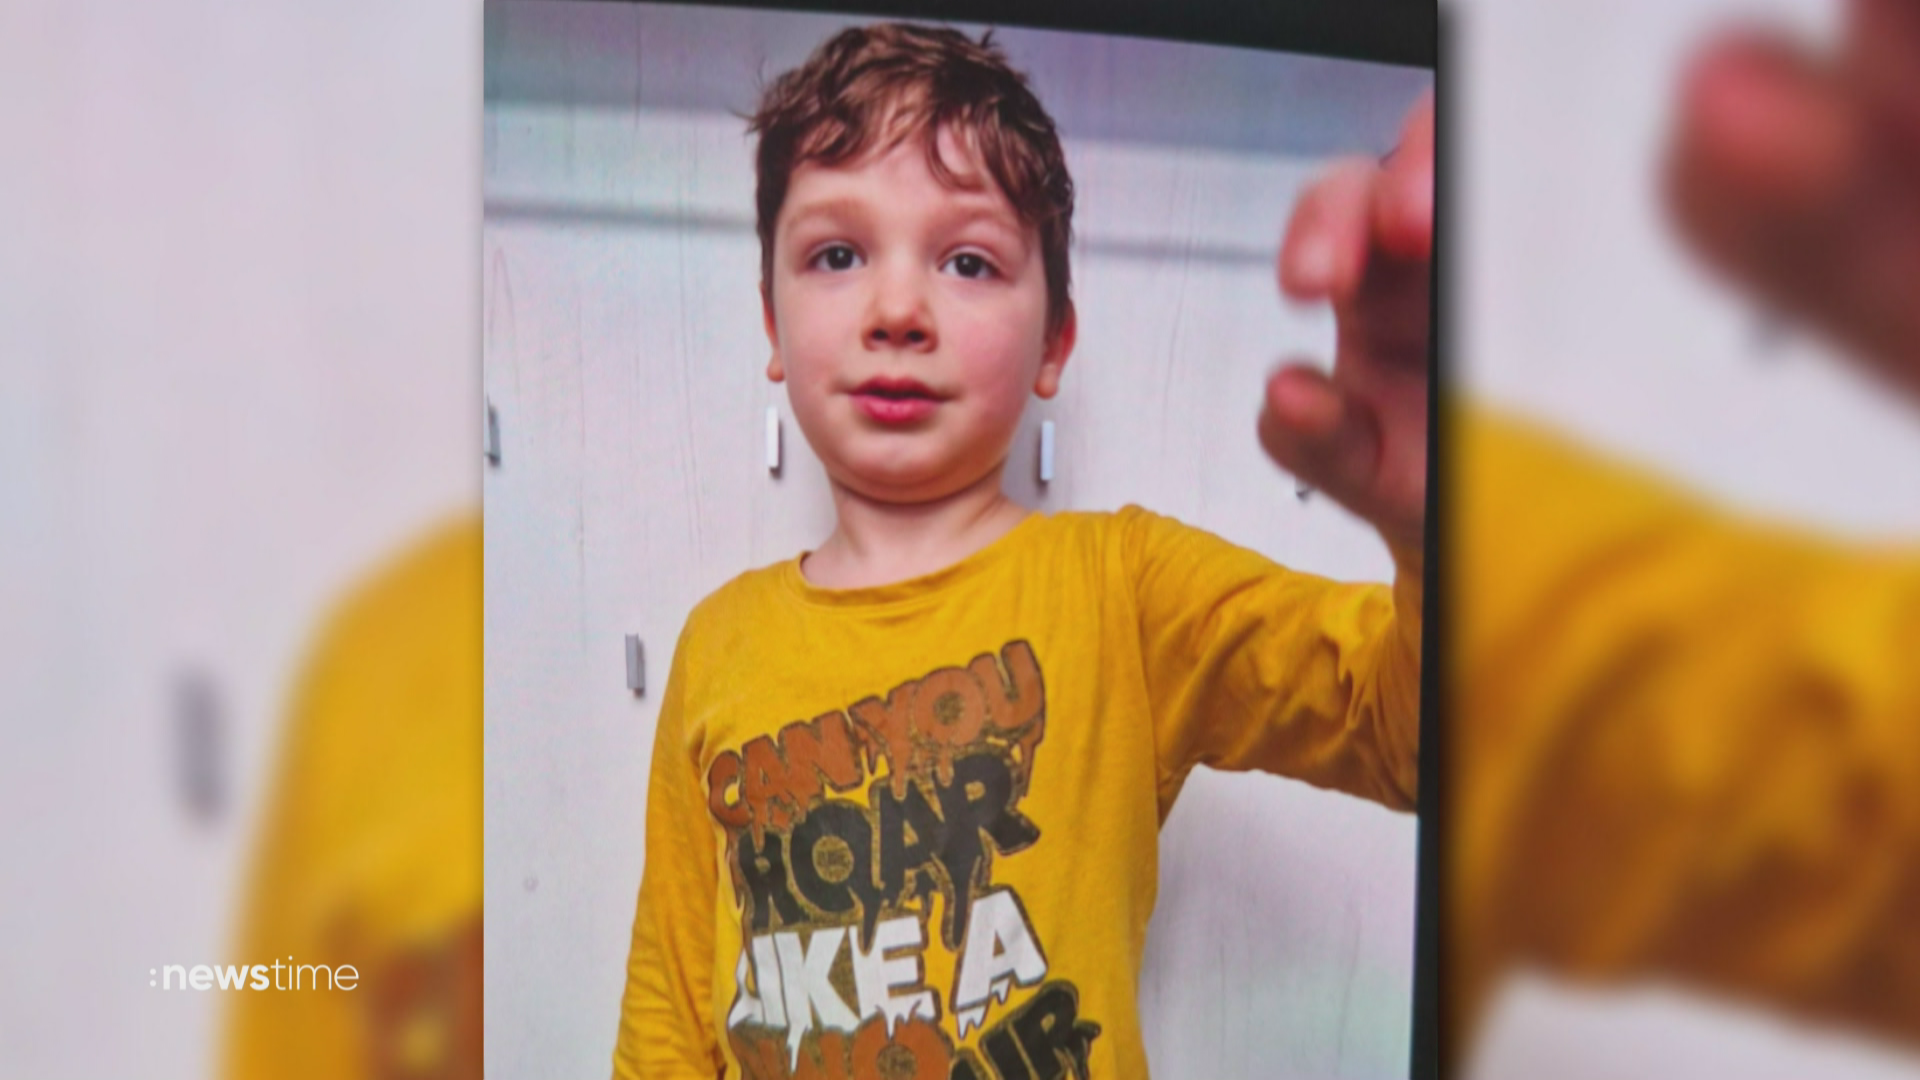 Keine Spur von Arian: Nur noch punktuelle Suche nach Sechsjährigen